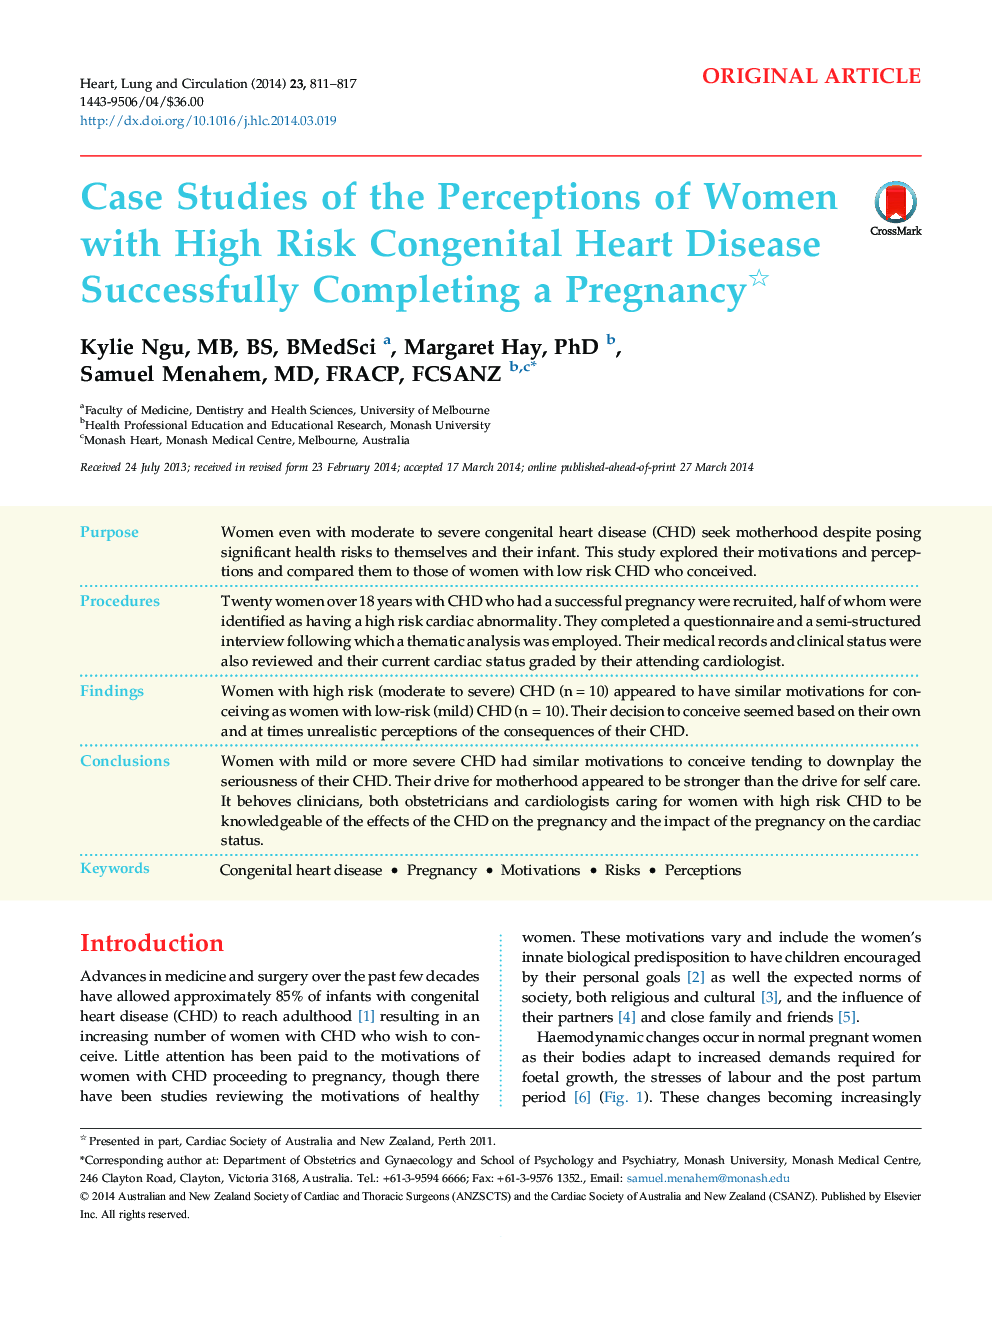 مطالعات موردی ادراکات زنان مبتلا به بیماری قلبی مادرزادی با ریسک بالایی با موفقیت بارداری 